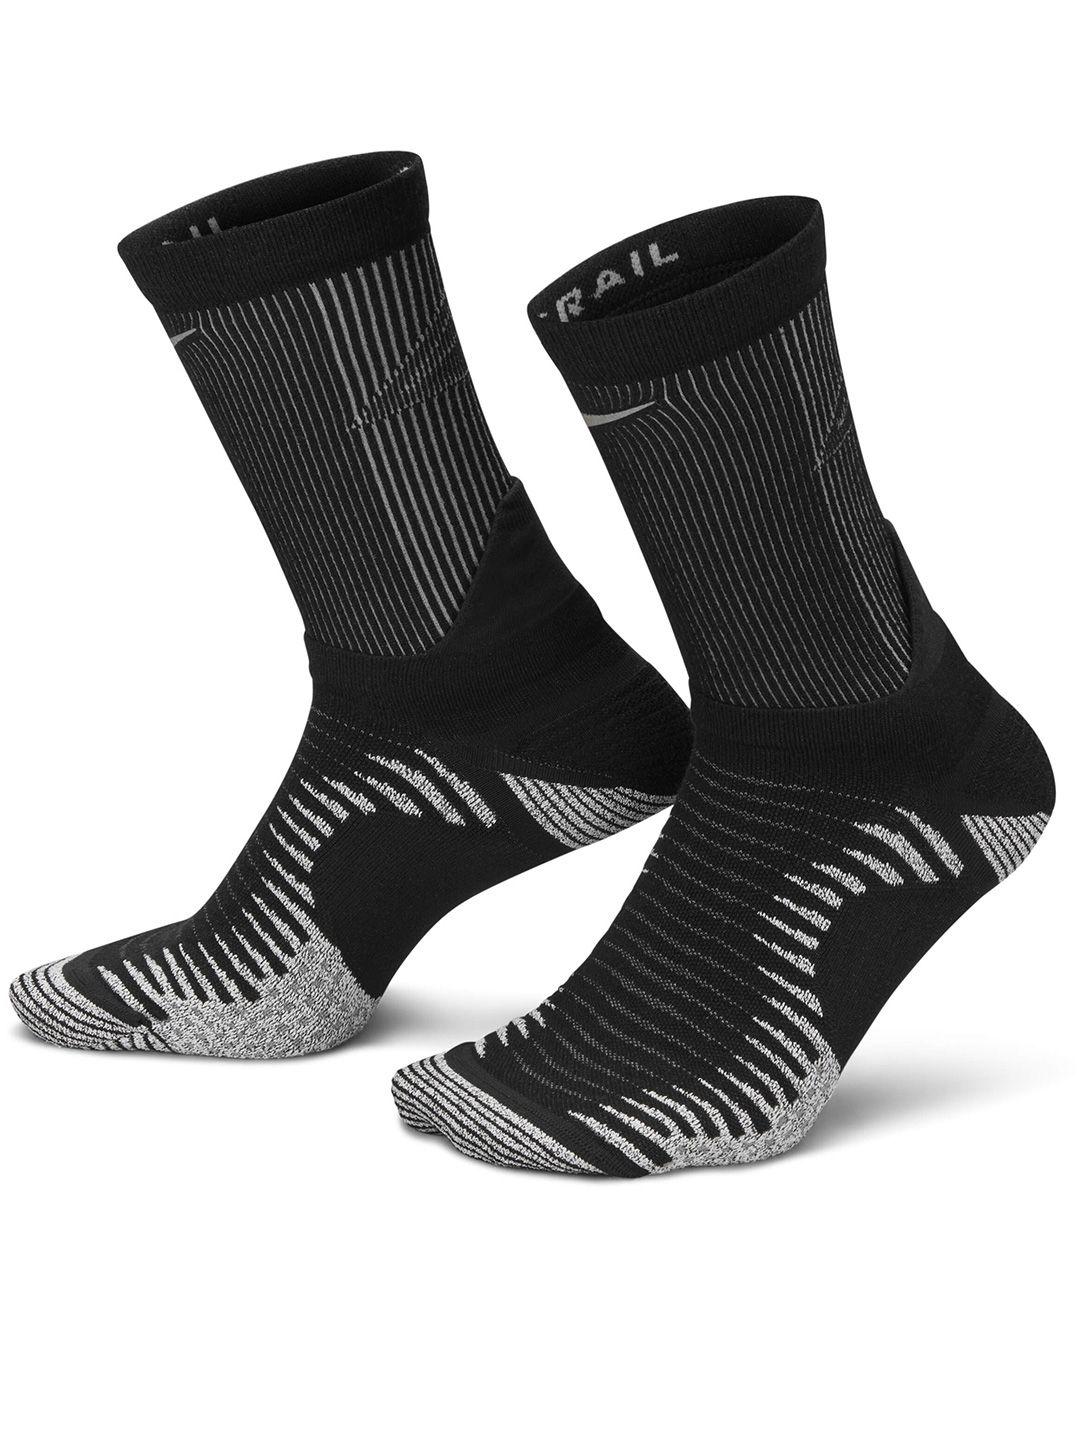 nike-dri-fit-trail-running-cotton-crew-socks